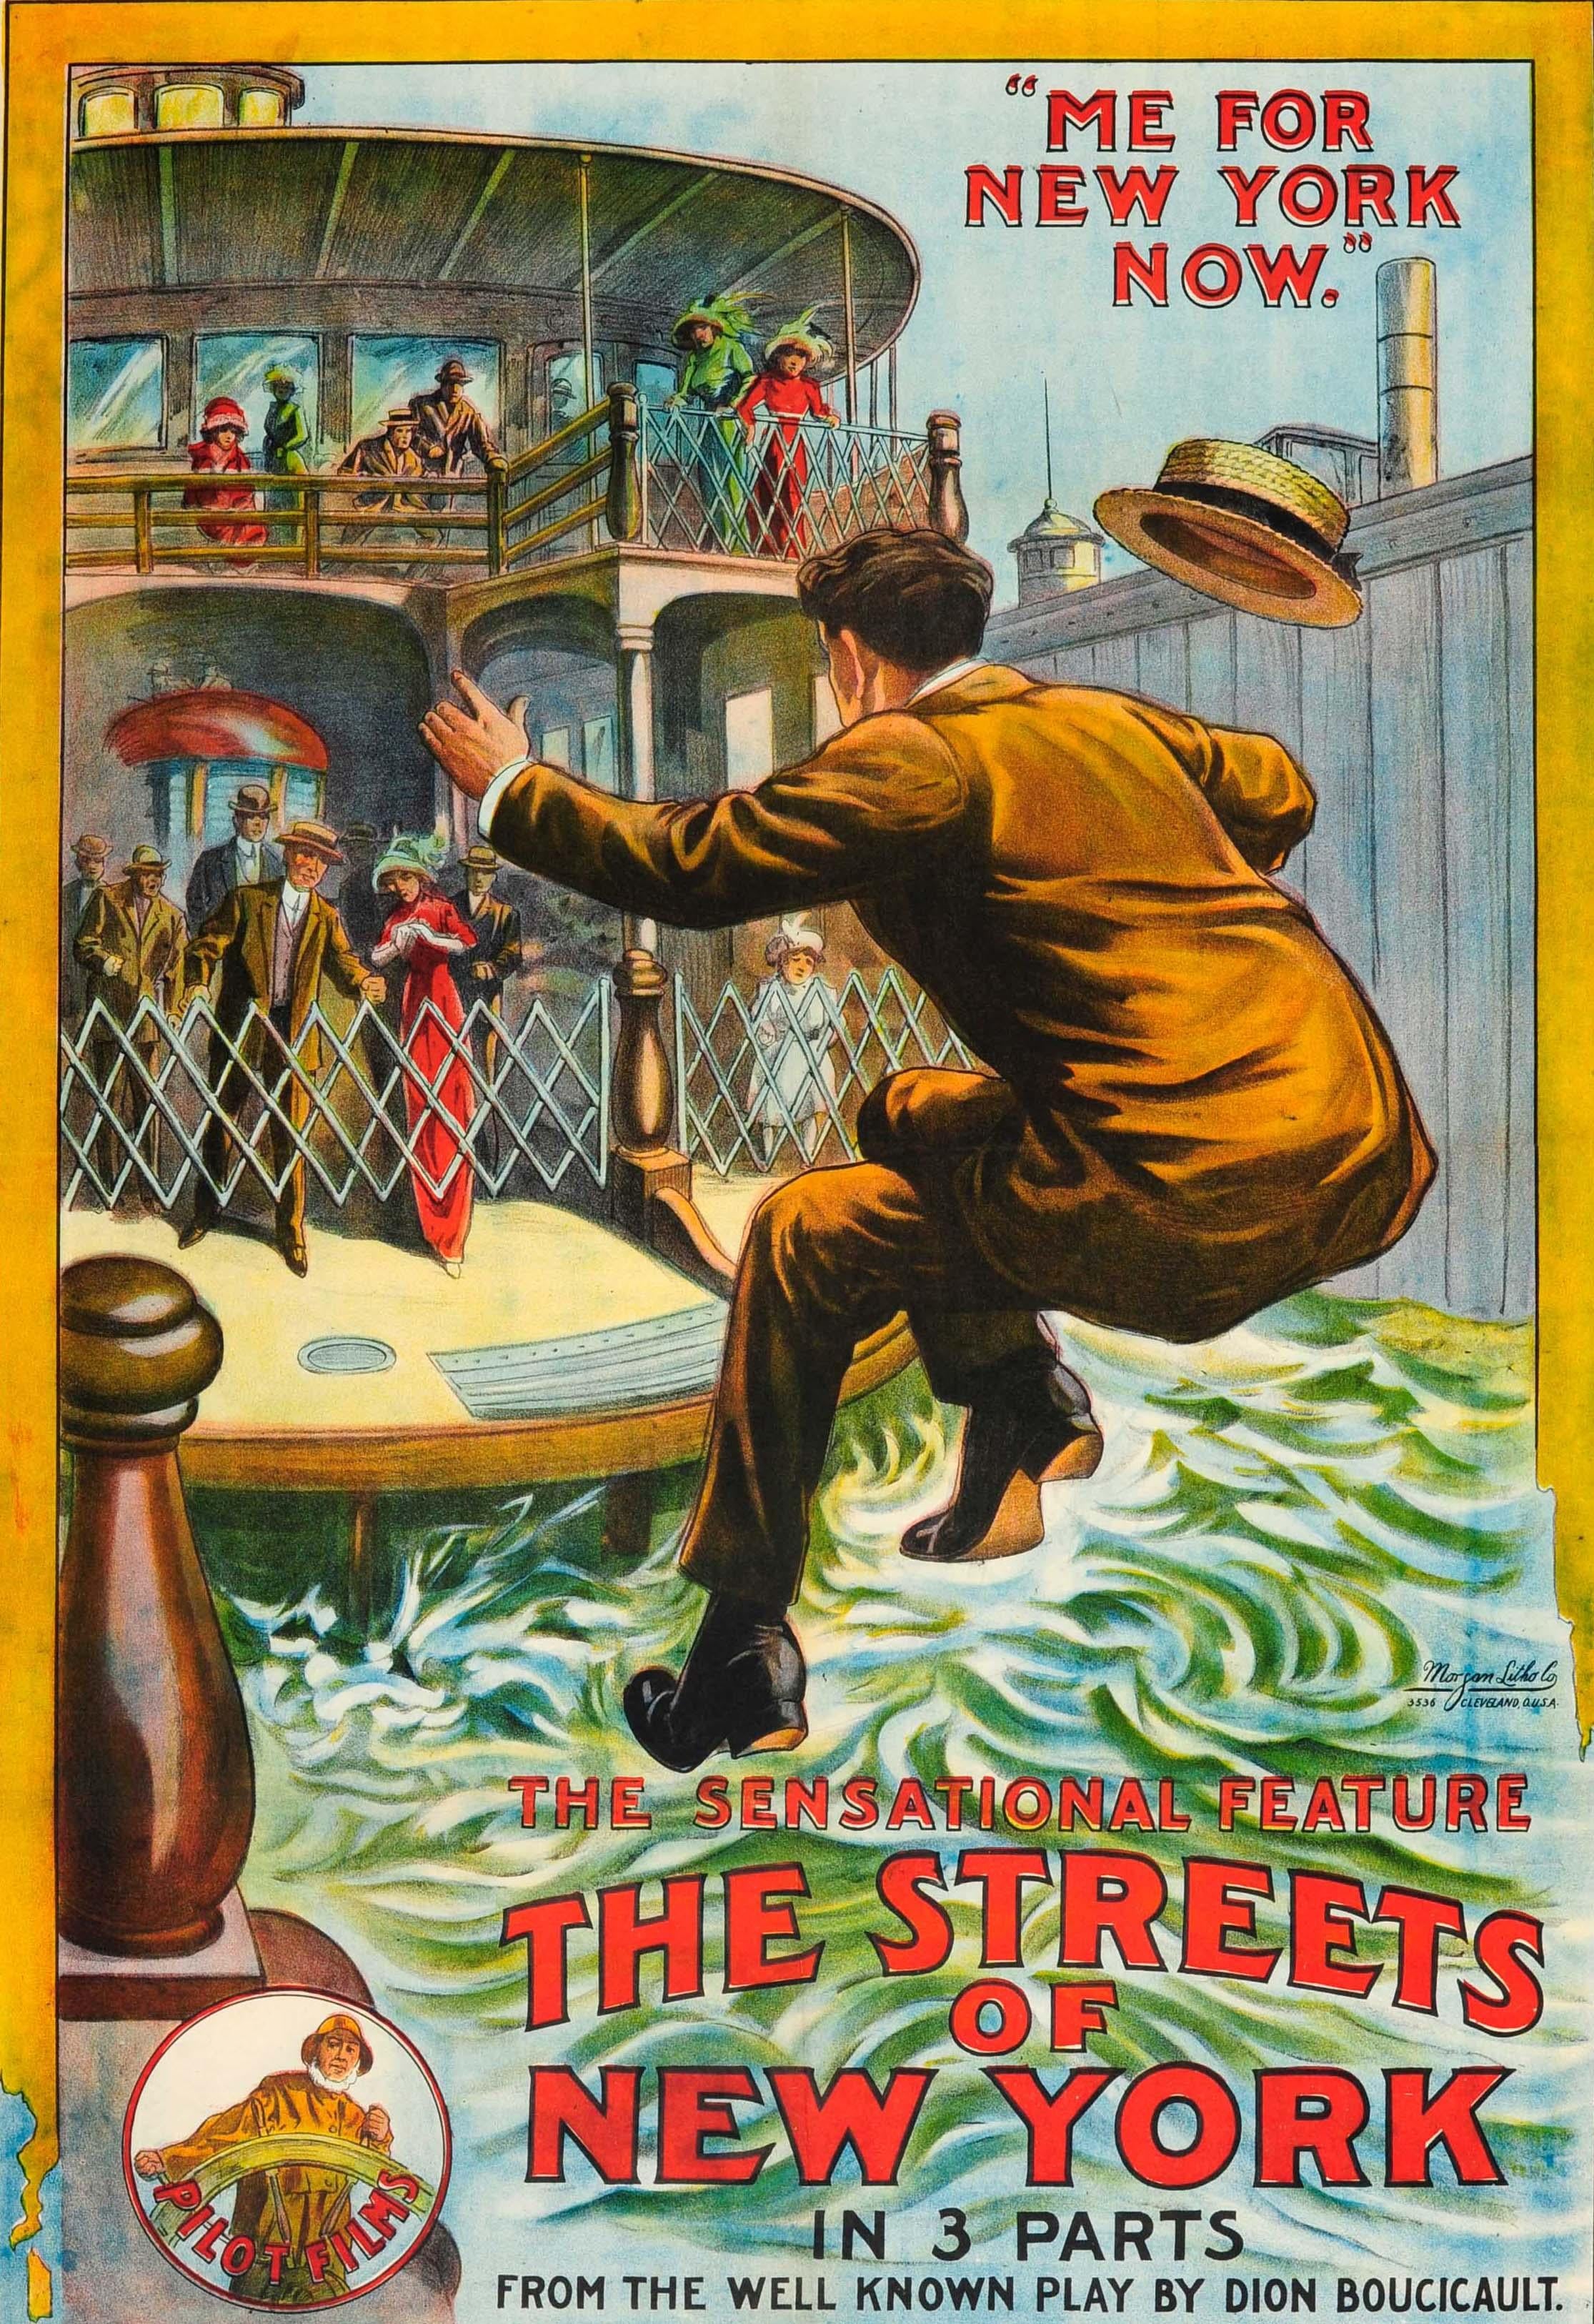 Originales antikes Filmplakat für das amerikanische Komödiendrama The Streets of New York - Der sensationelle Spielfilm in 3 Teilen 